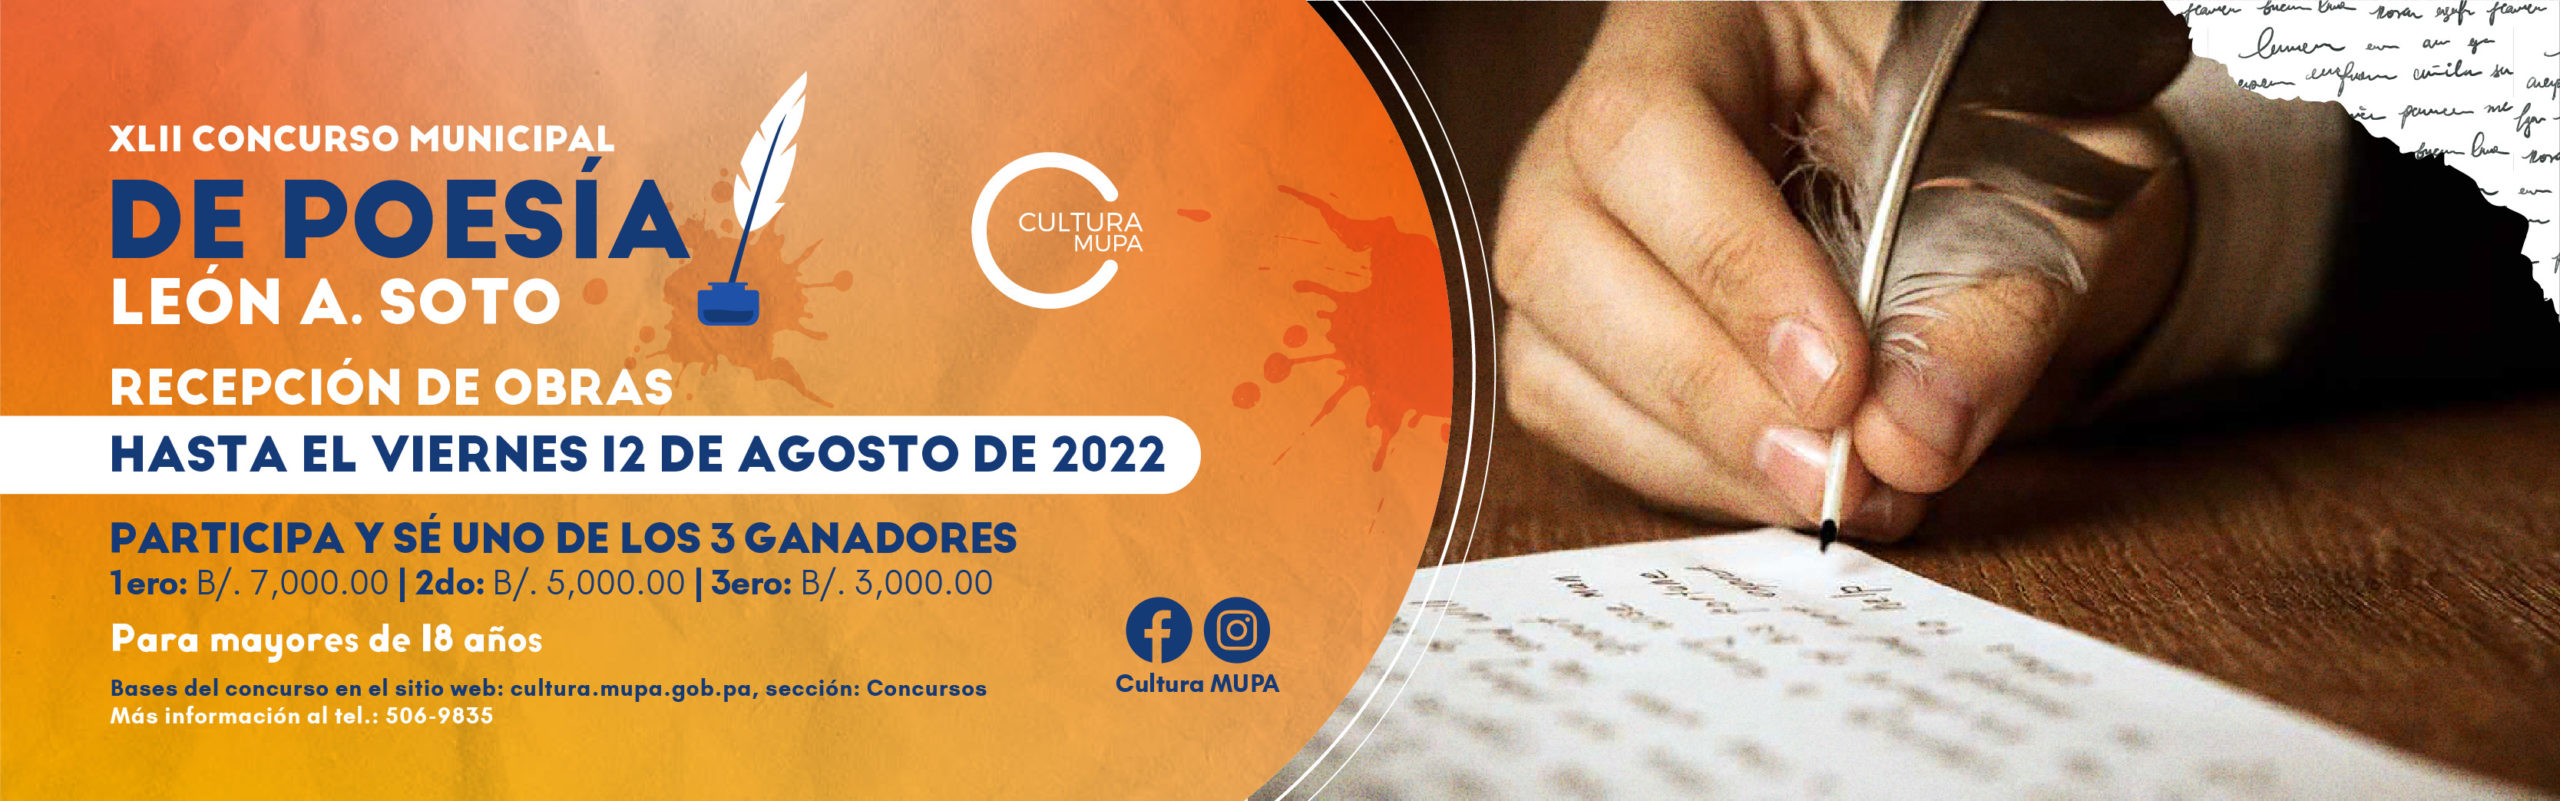 Concurso de Poesia Leon A. Soto 2022